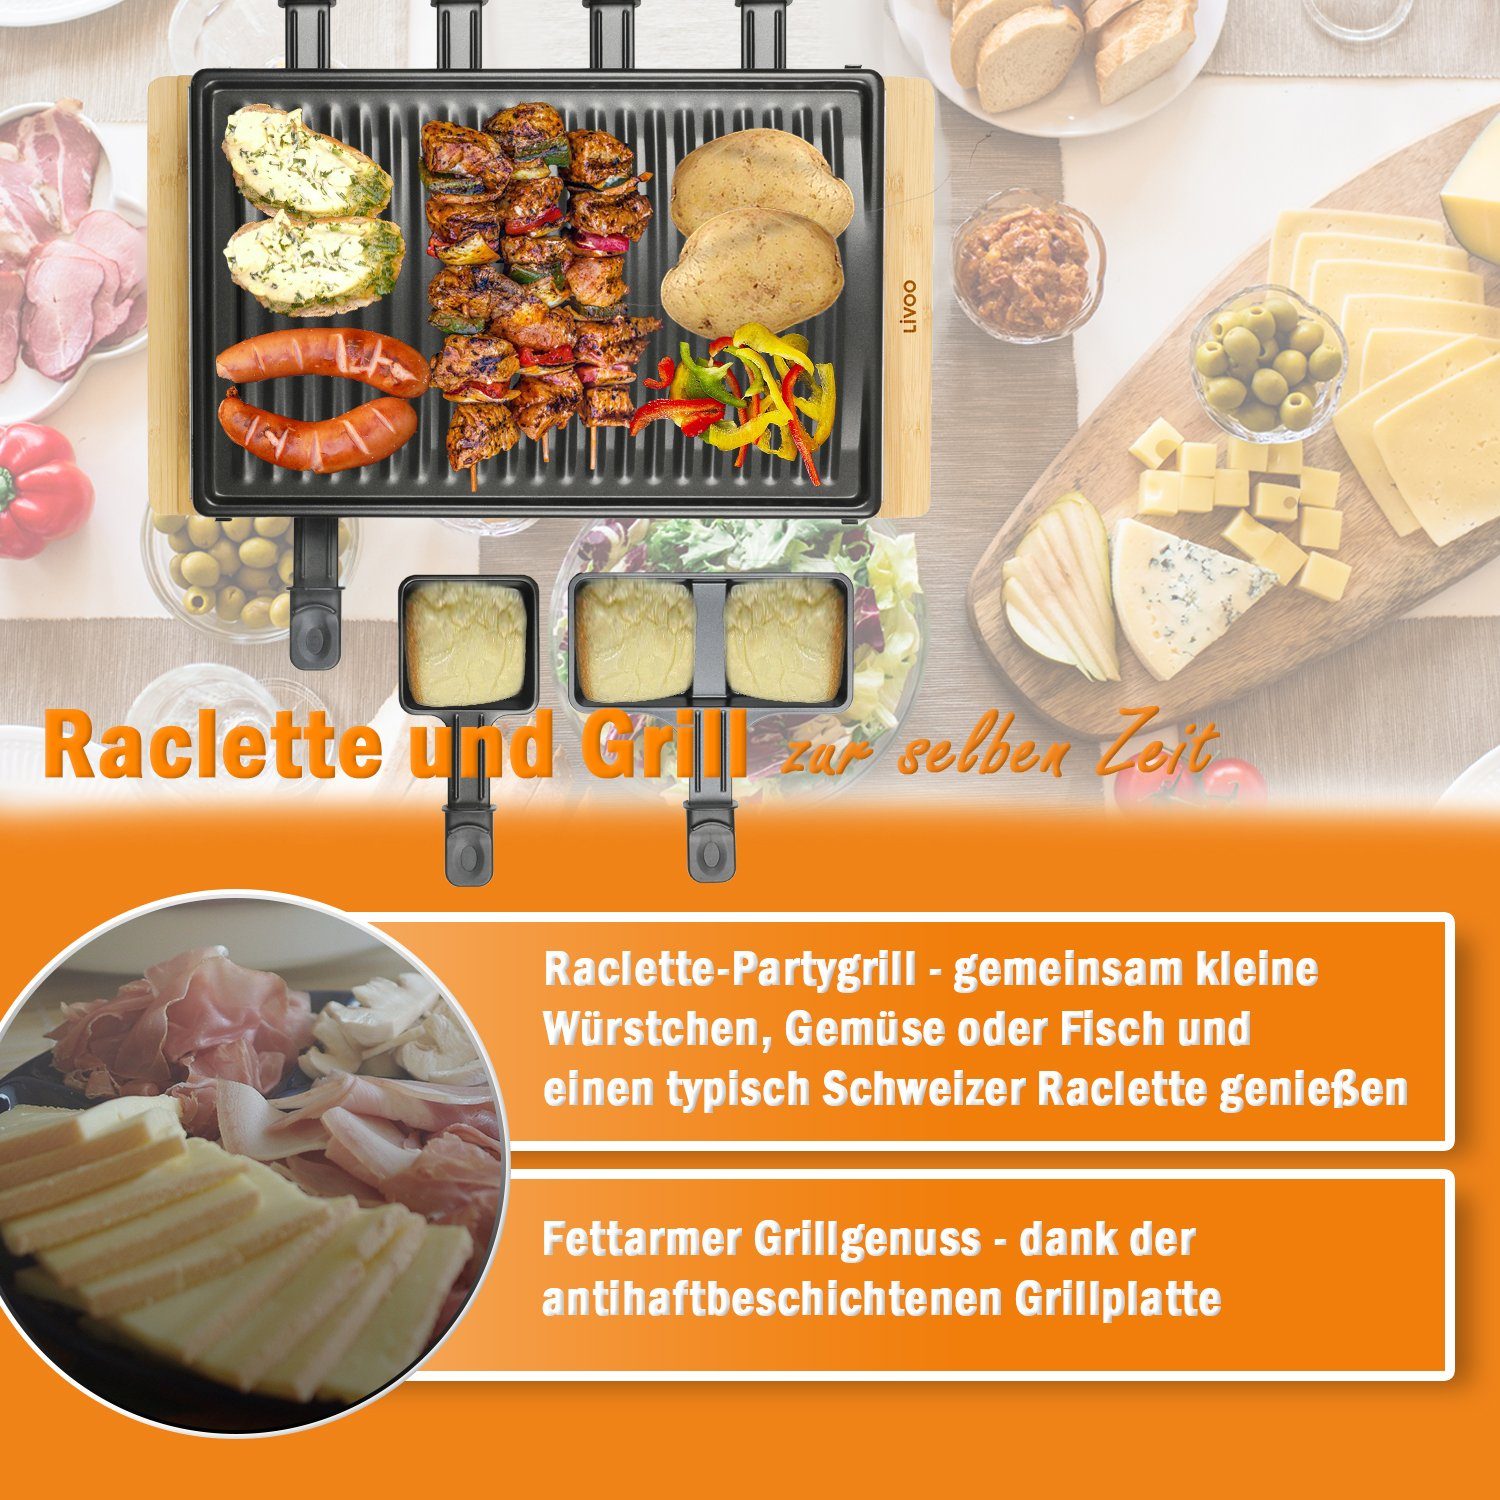 LIVOO Raclette LIVOO Raclette Raclettegrill W, Personen W Bambus 1200 1200,00 8 Raclettepfännchen, Holzspatel, Thermostat, Anti-Rutsch-Füße, für Grill DOC257, 8 8 Grillplatte abnehmbare